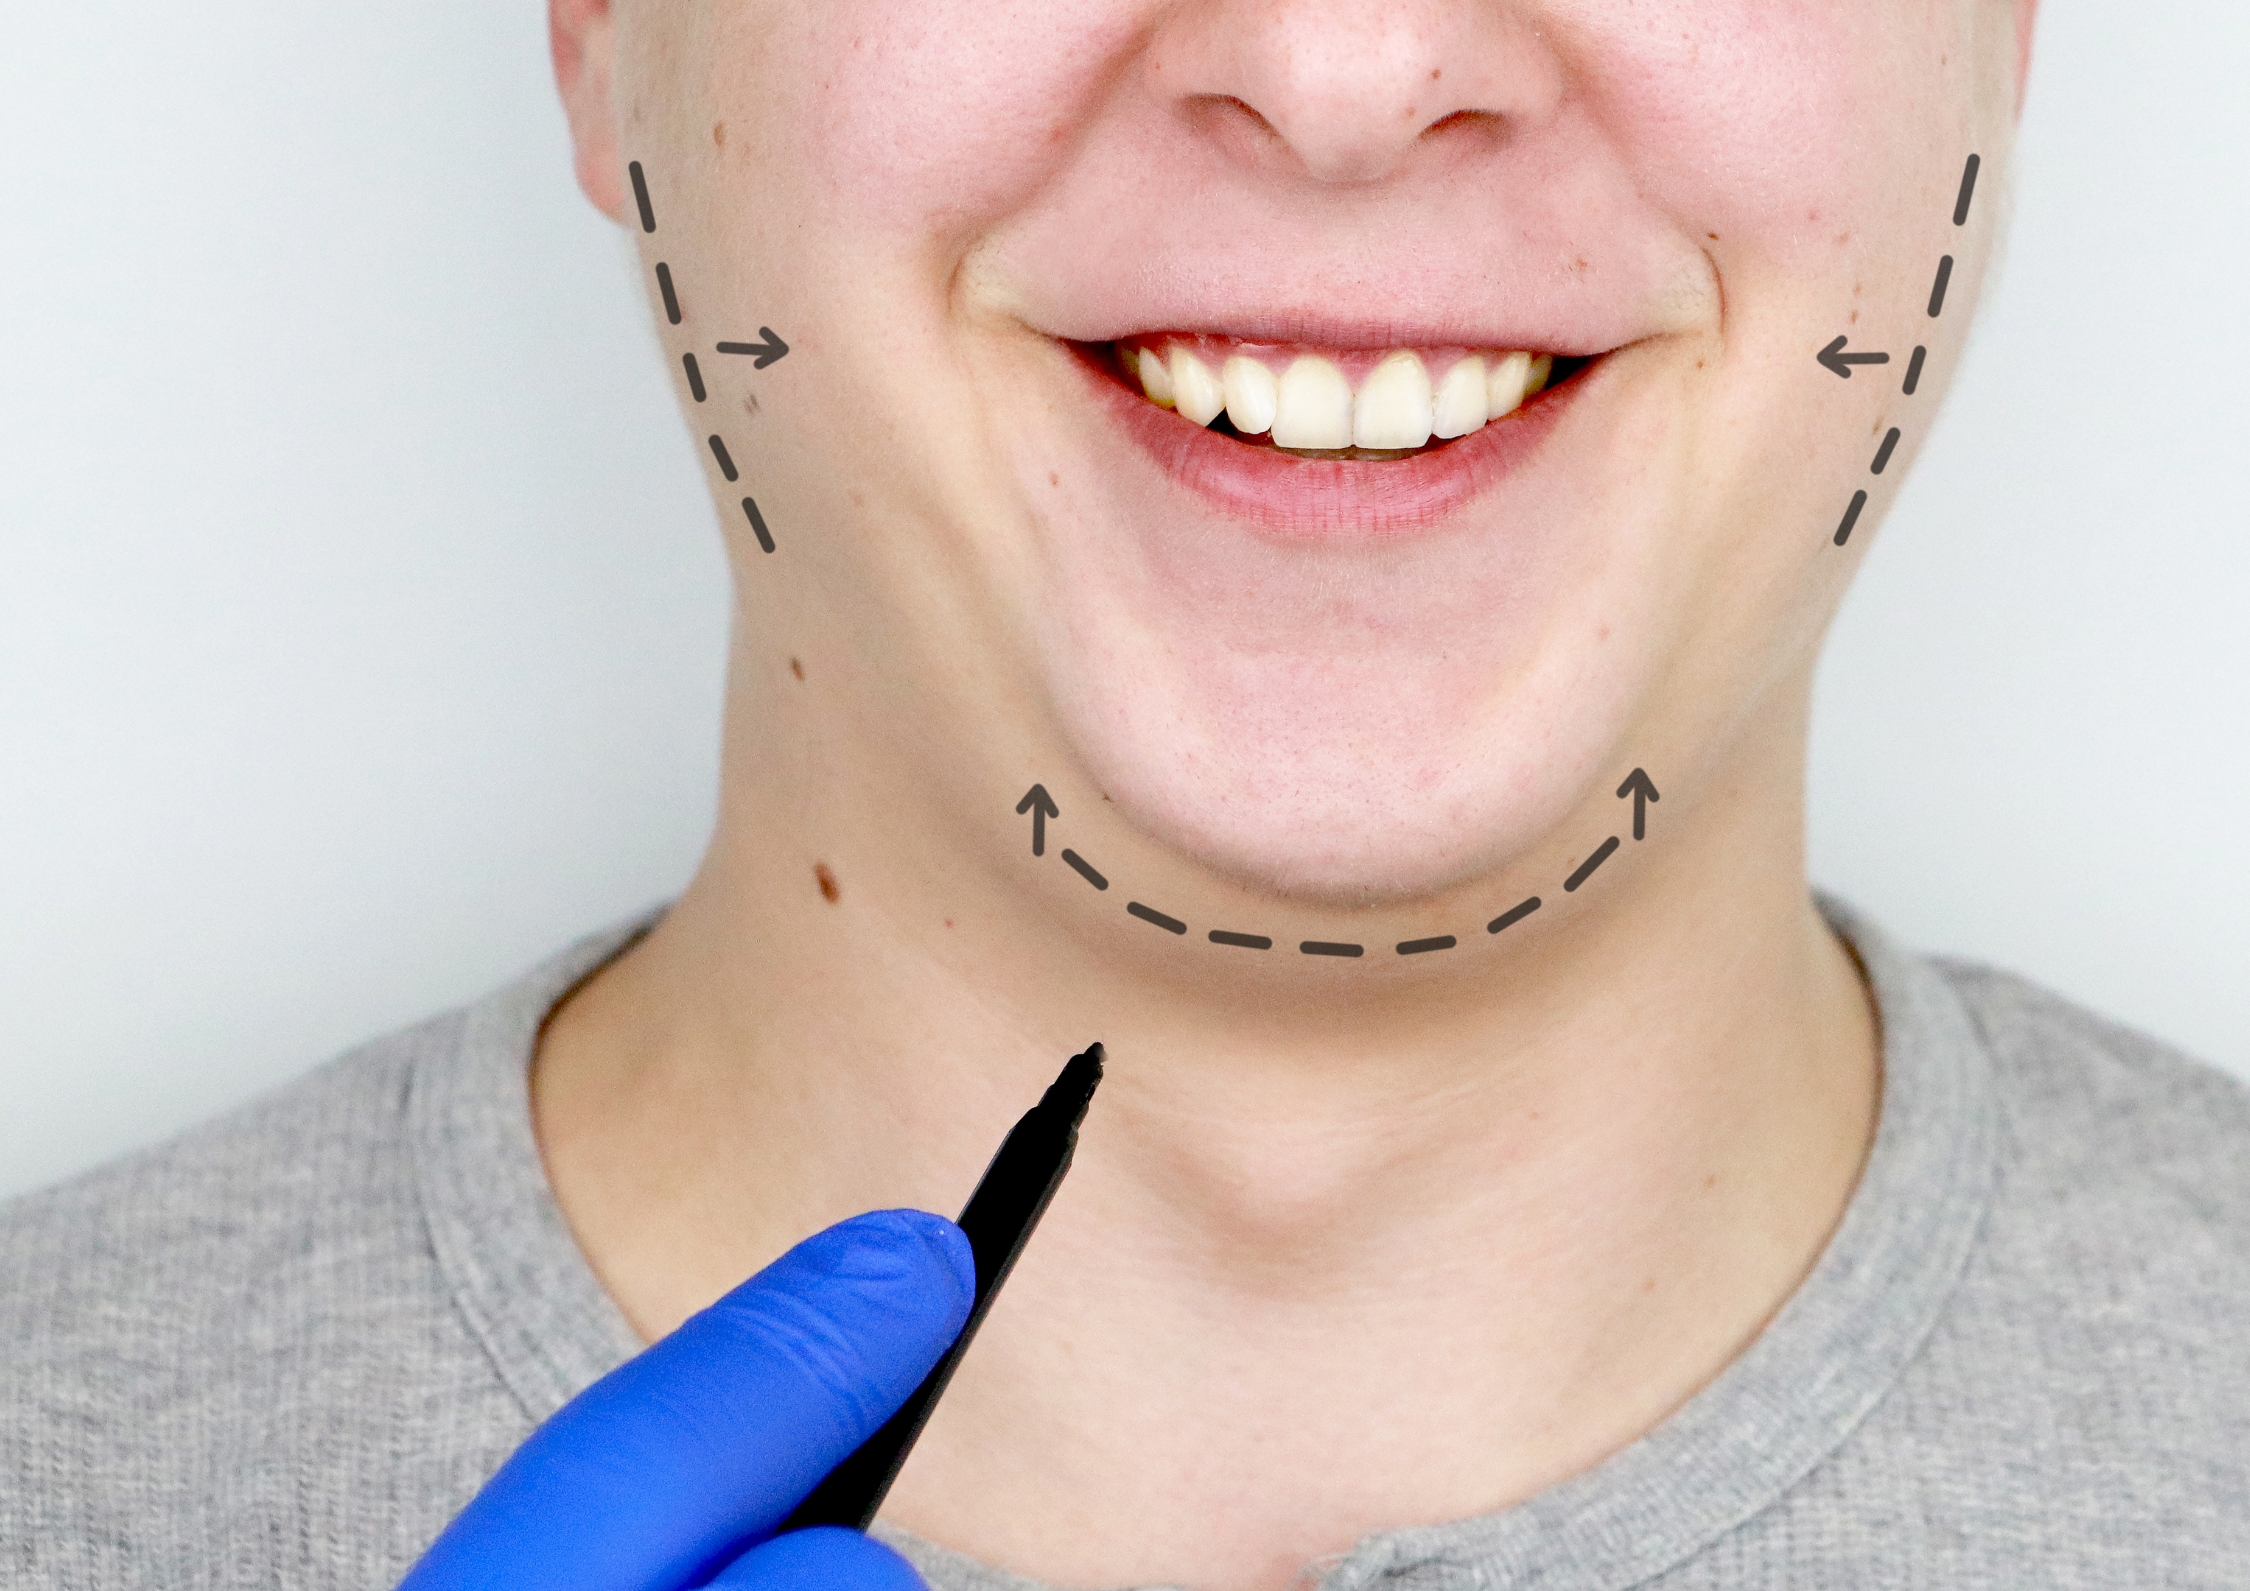 Männliches Gesicht mit Anzeichnenden für eine mögliche Operation z.B Bichektomie